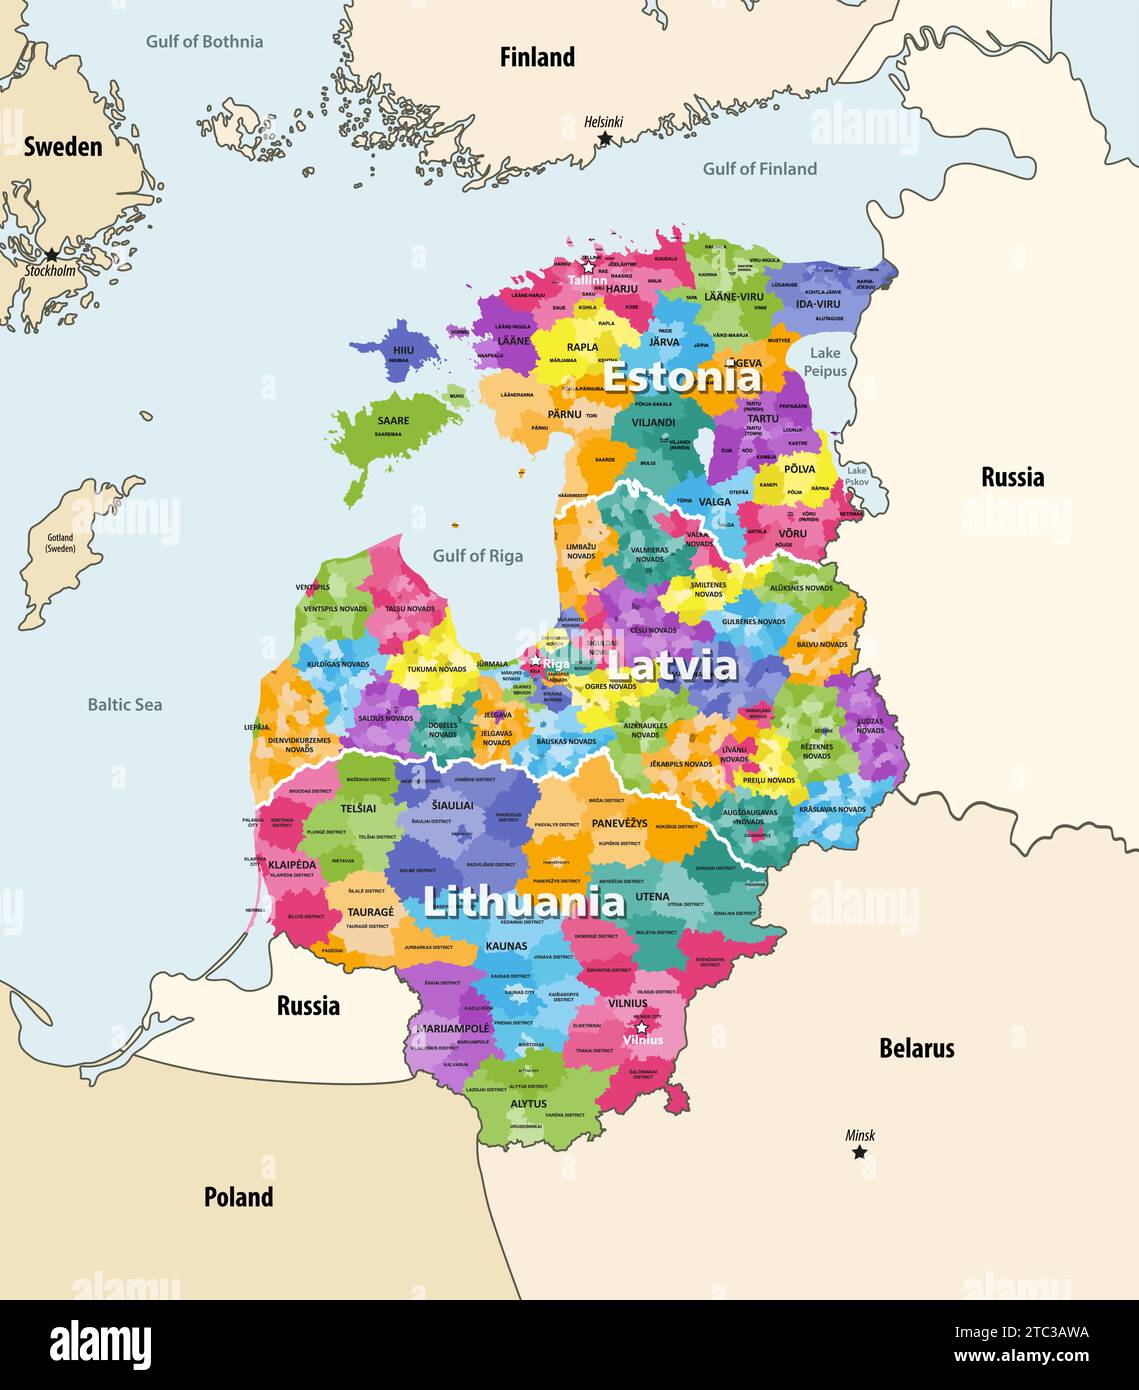 Baltische staaten, nordöstliche Region Europas mit den Ländern Estland, Lettland und Litauen, Vektorkarte mit benachbartem Countr Stock Vektor